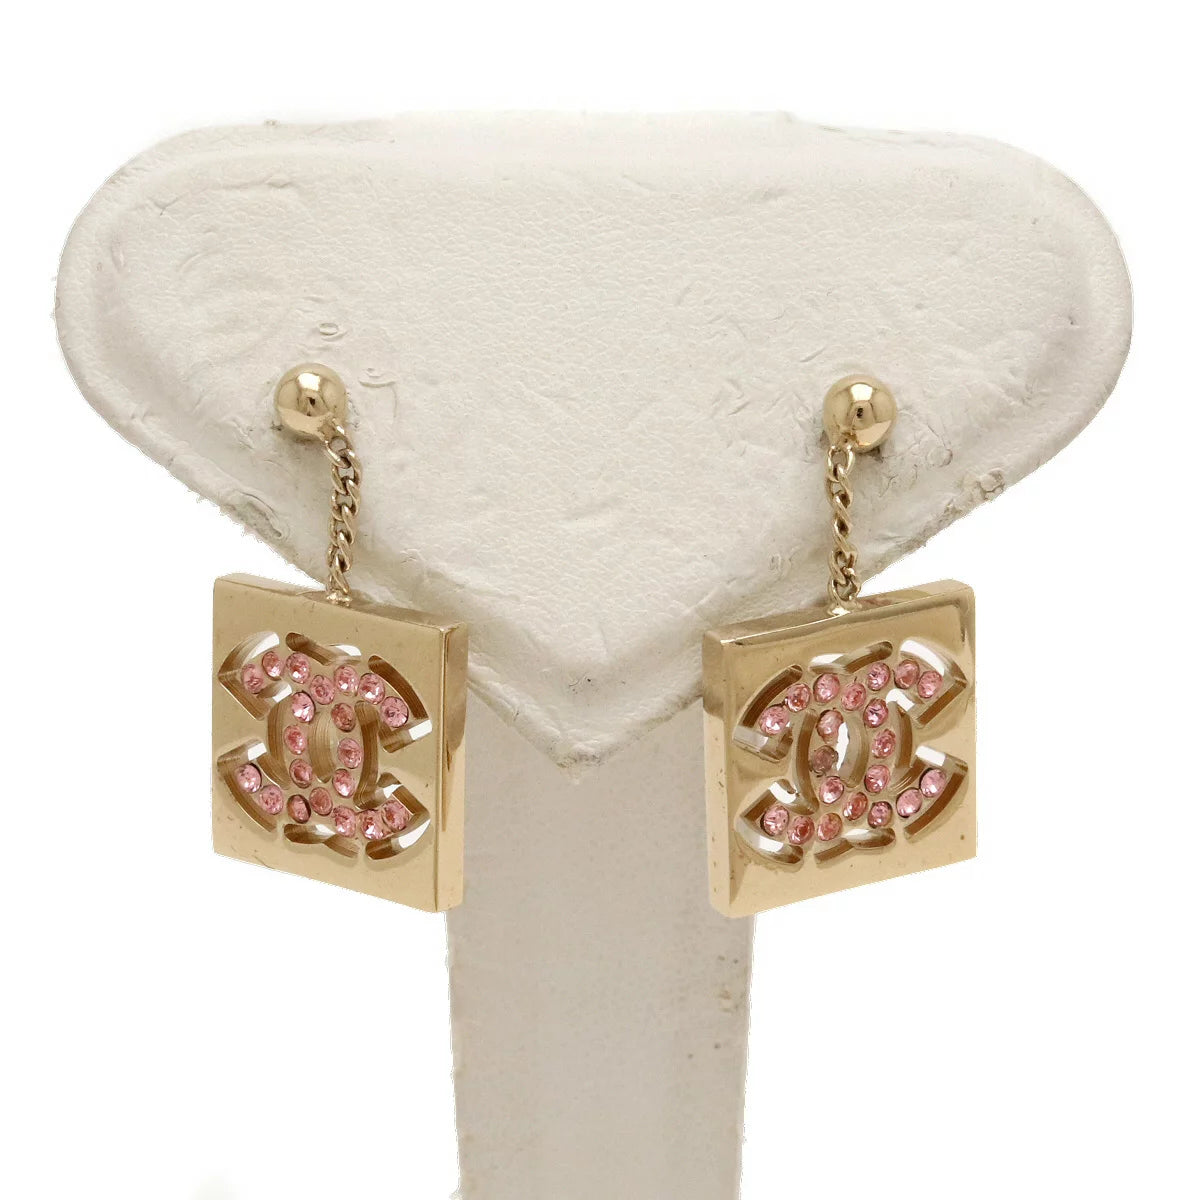 Chanel hoepel oorbellen roze goud strass